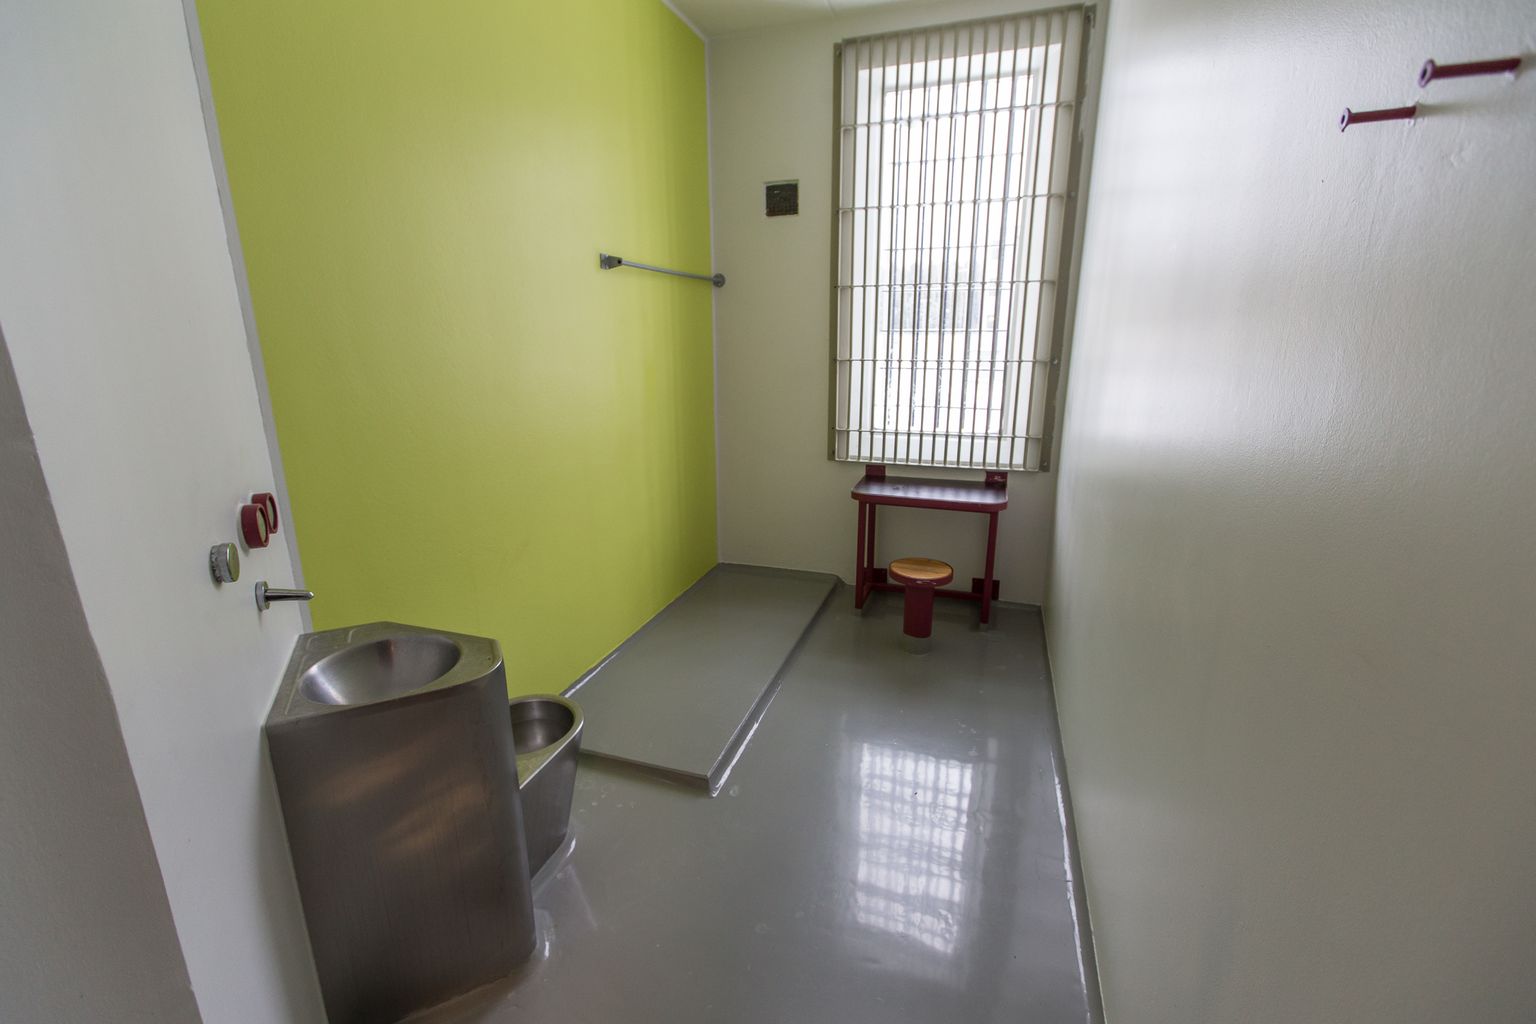 Камера-одиночка, или карцер Вируской тюрьмы, где, по оценке канцлера права, заключенных часто держат в несколько раз дольше максимального срока, предусмотренного международными стандартами.